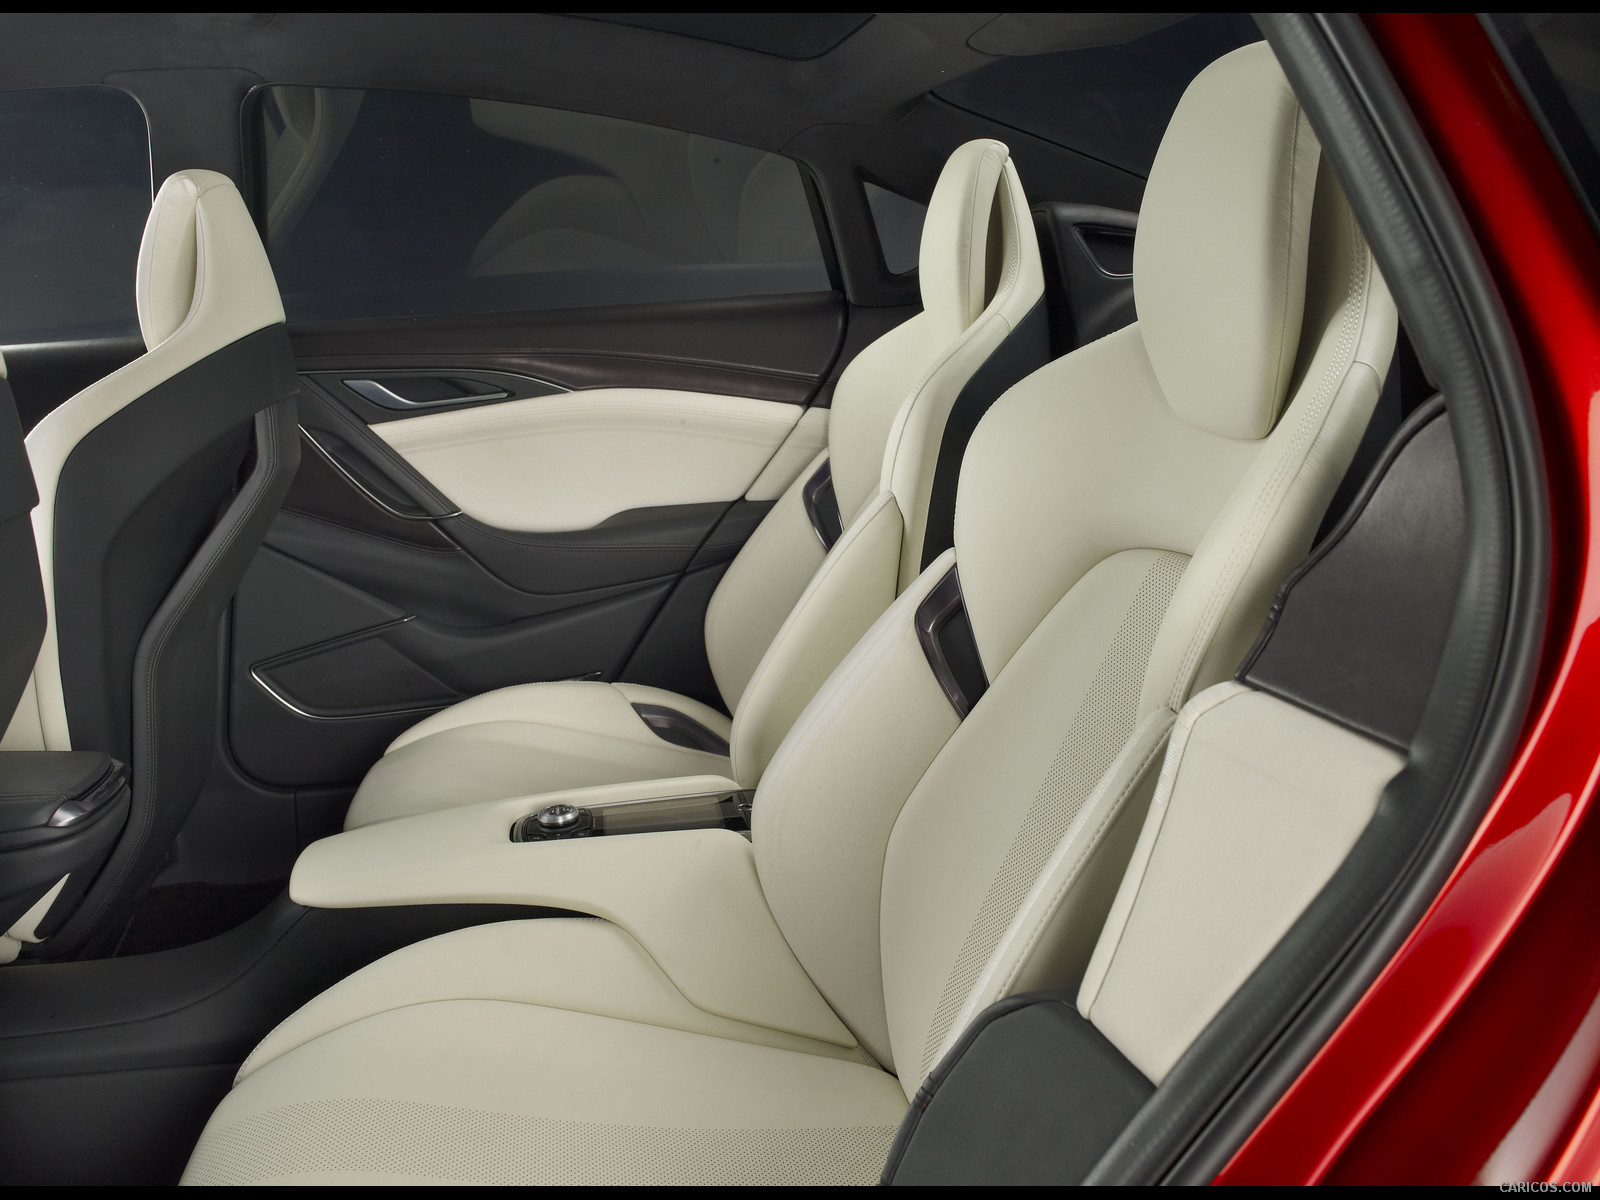 Mazda Takeri Concept  - Interior Rear Seats, #80 of 109